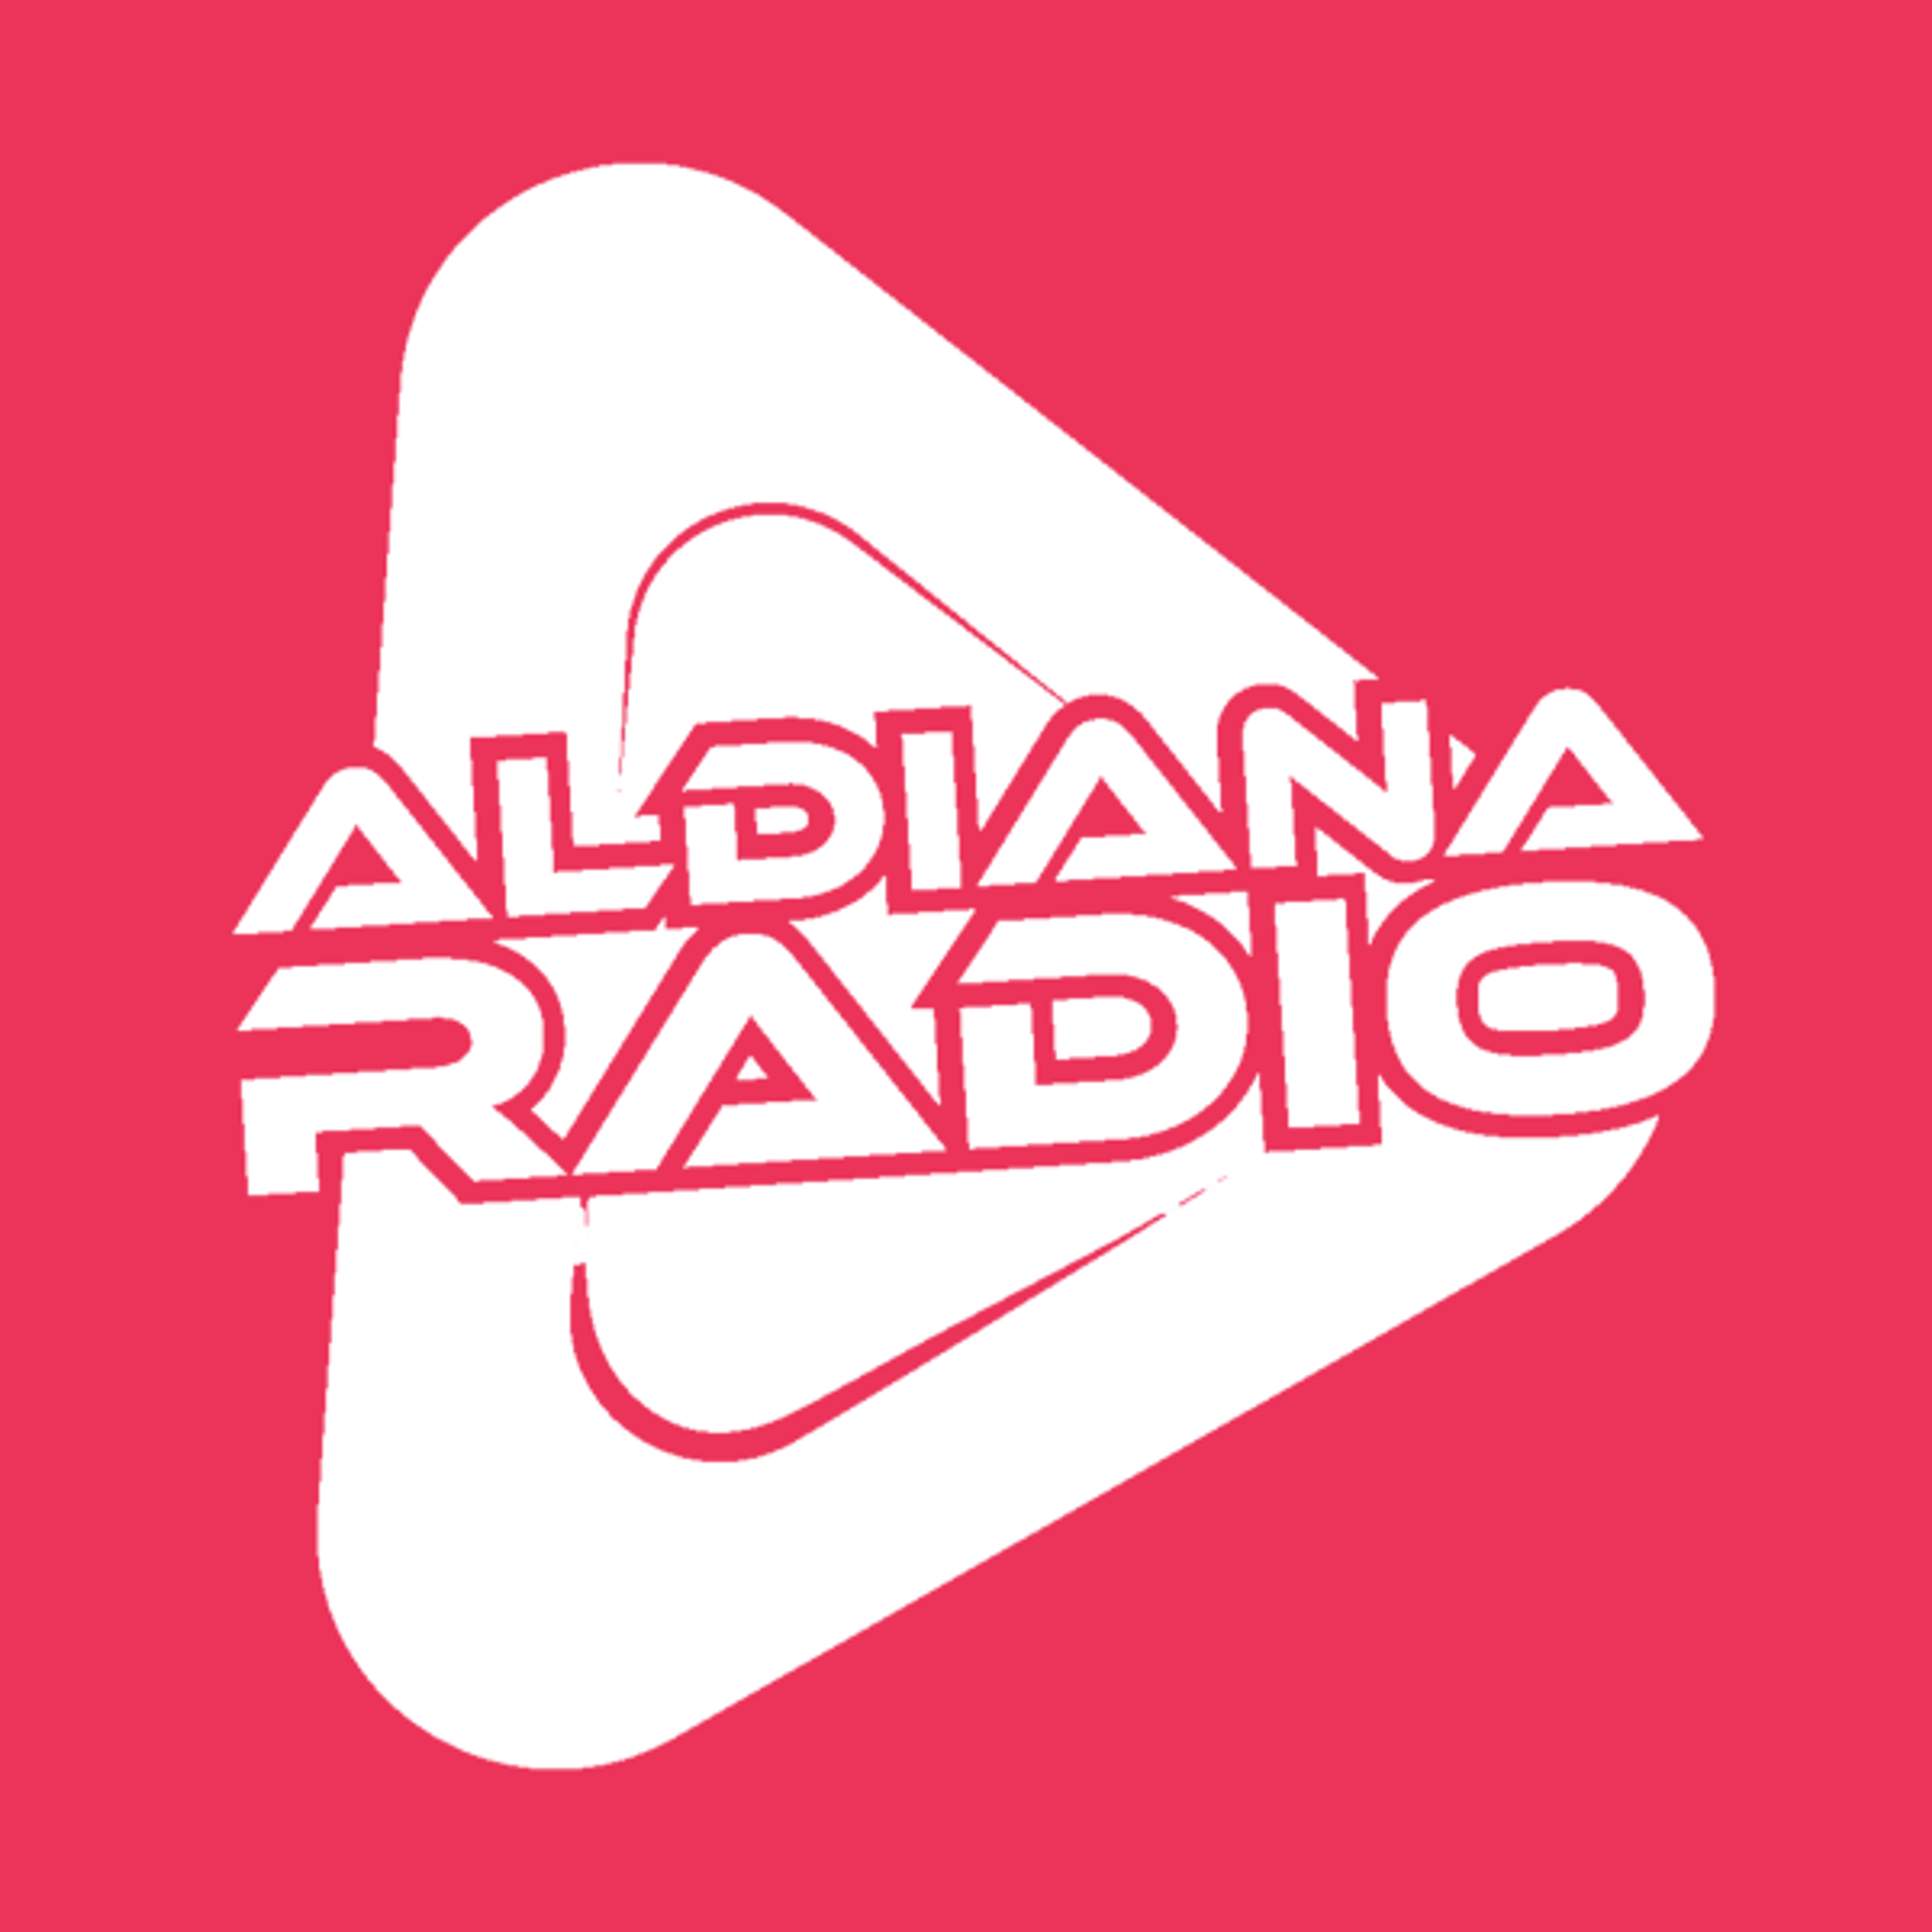 Aldiana Radio in Nederland gestart